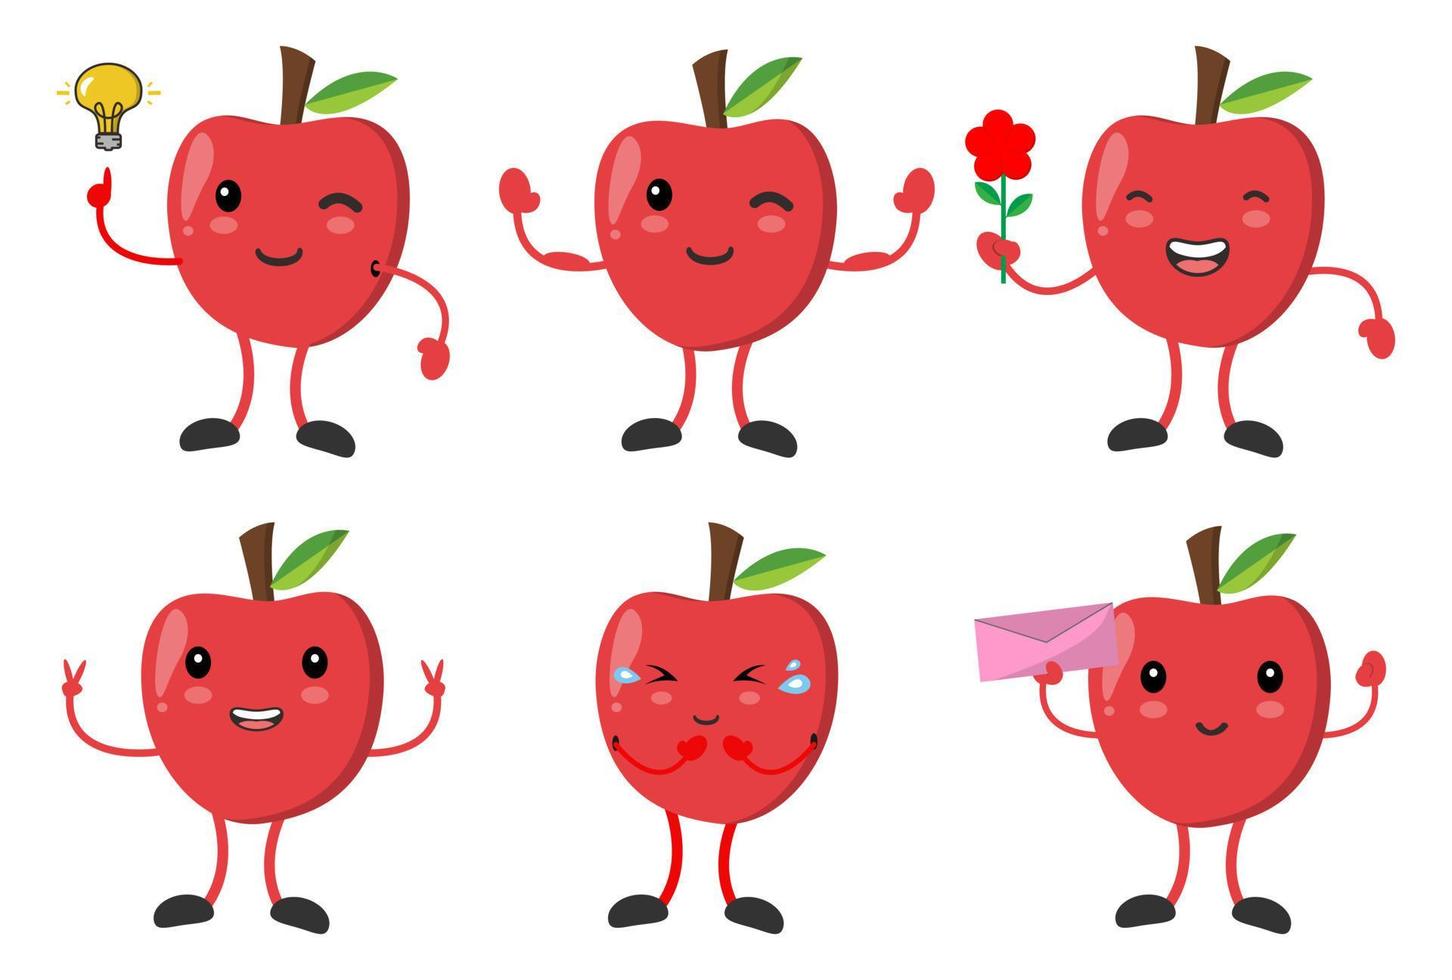 impostare la mela carina con varie emozioni pongono immagini vettoriali di personaggi dei cartoni animati